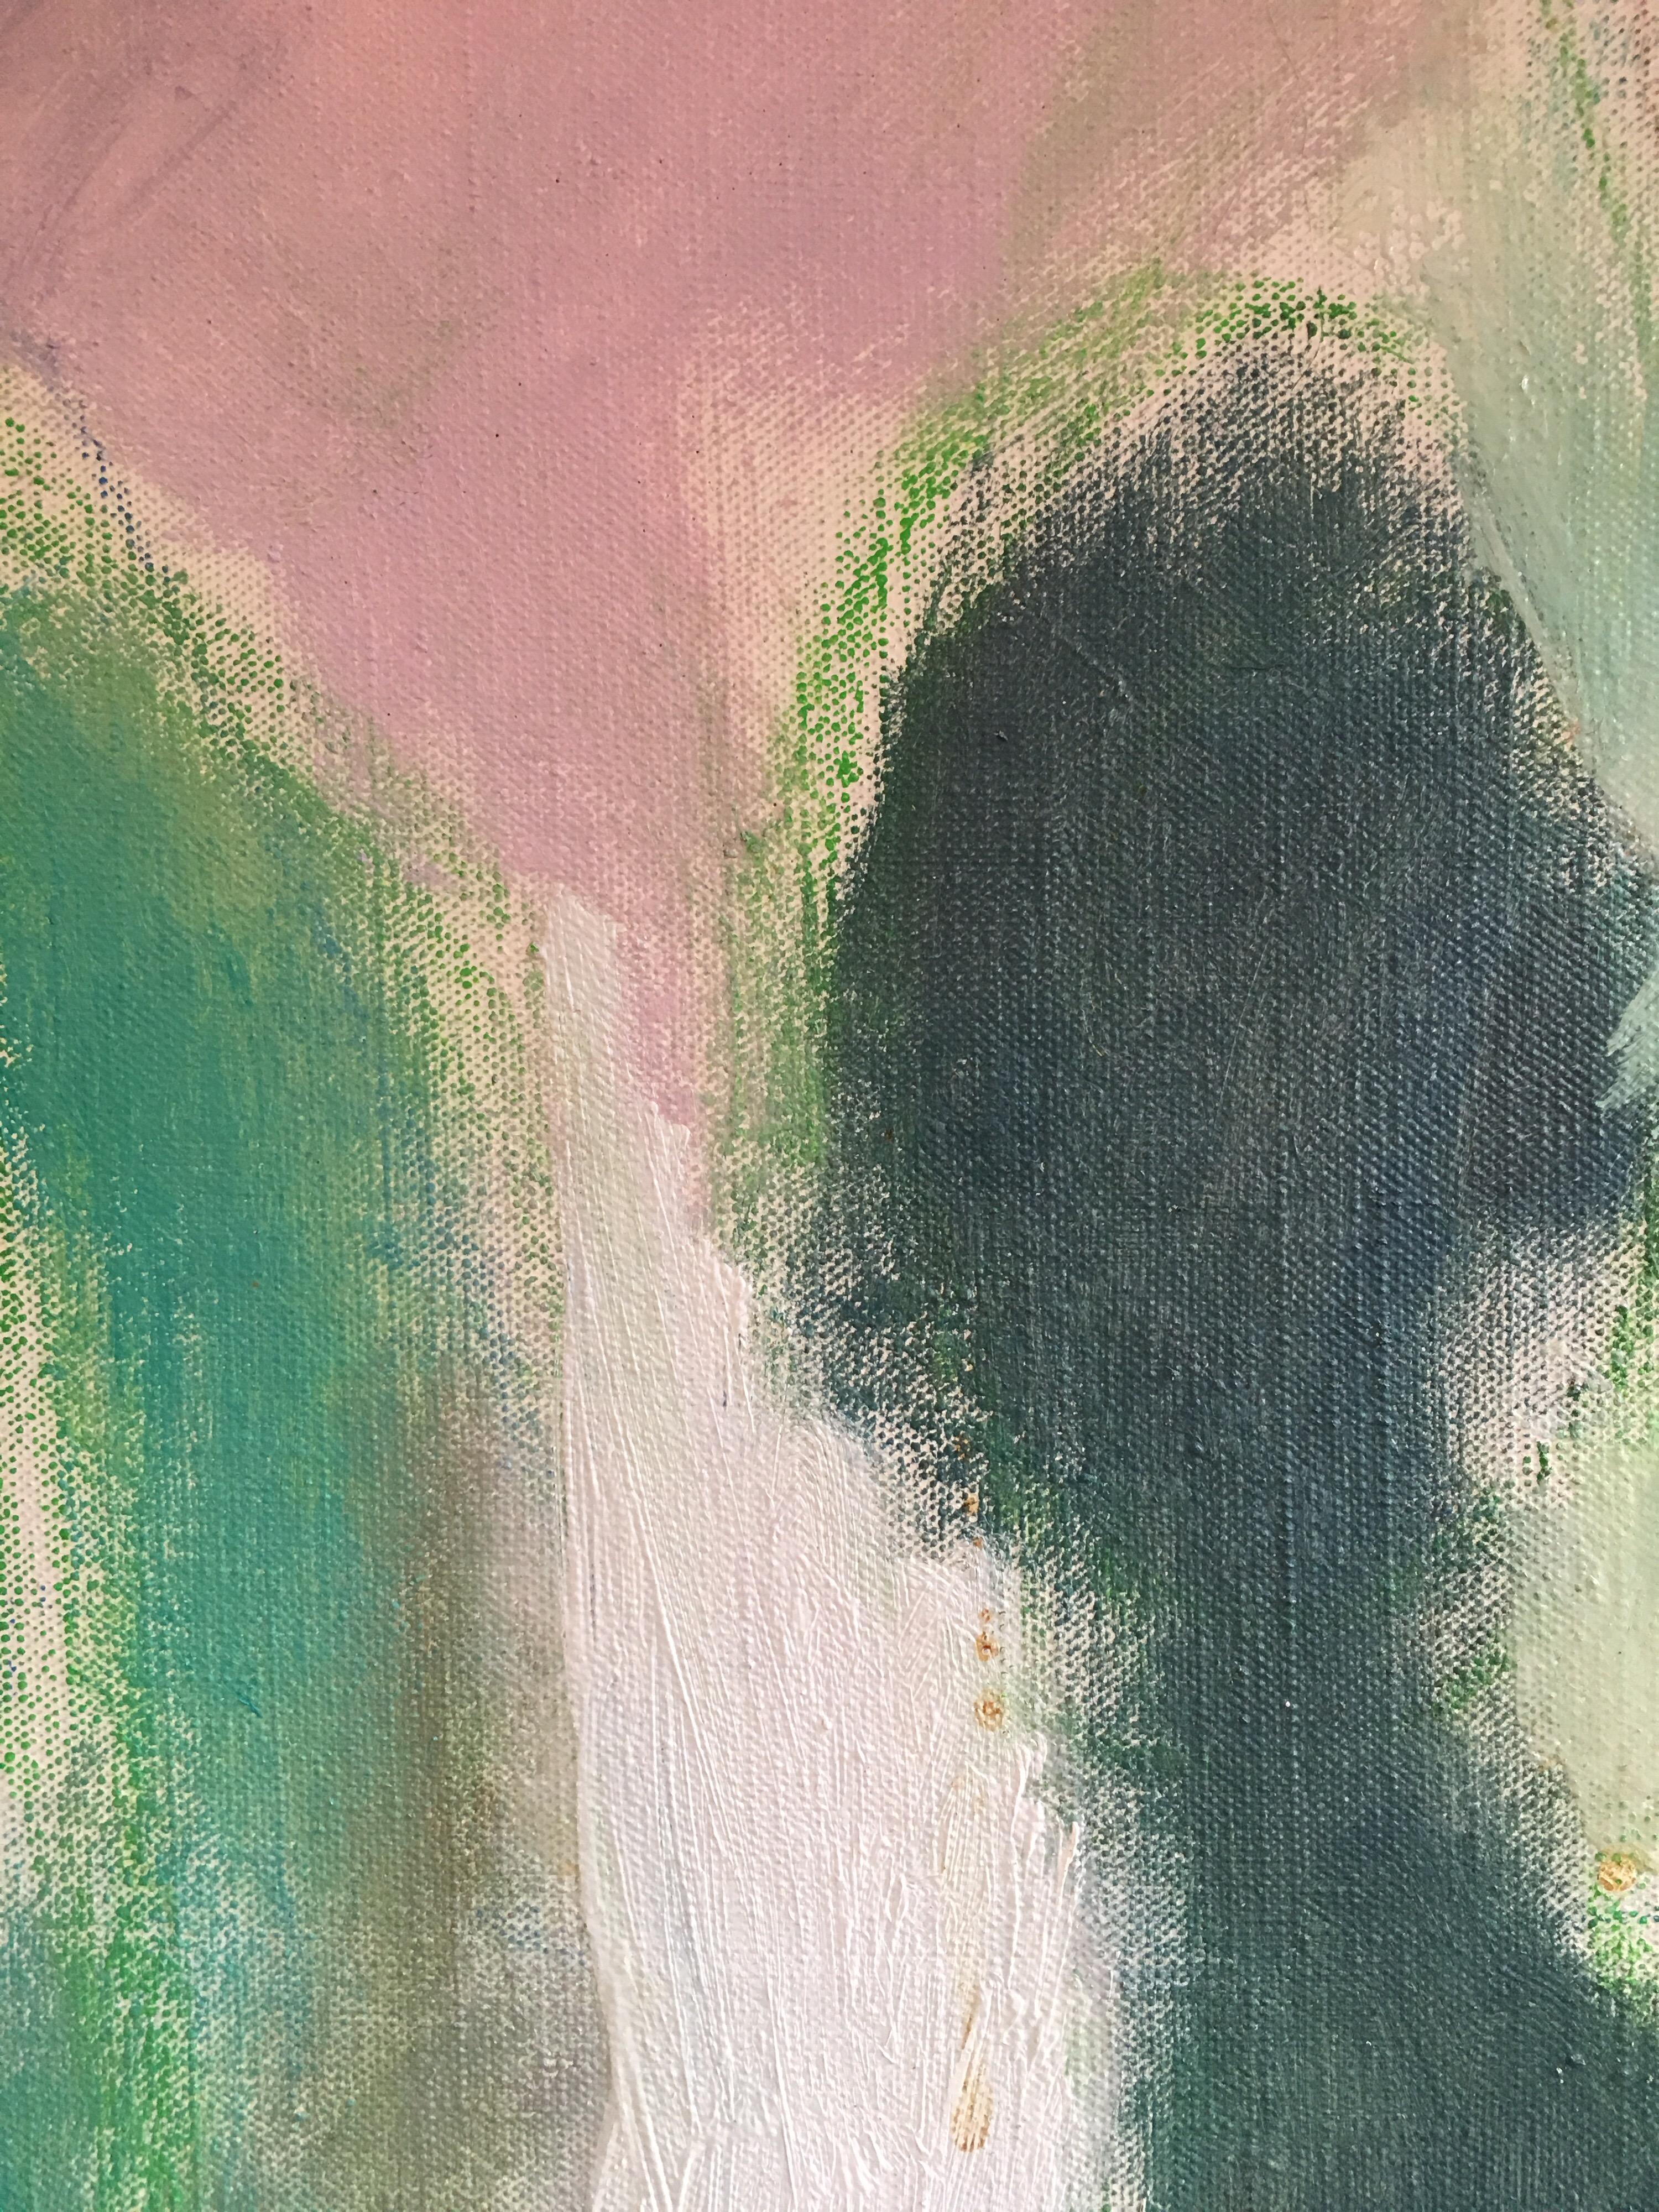 Akos Biro (Hongrois, 1911-2002)
Pastel Pink 1970's Abstract, Colourful Oil Painting, Original
Peinture à l'huile sur toile, encadrée
Taille du cadre : 33 x 26.5 pouces

Peinture à l'huile originale, magnifiquement colorée, du très populaire et très